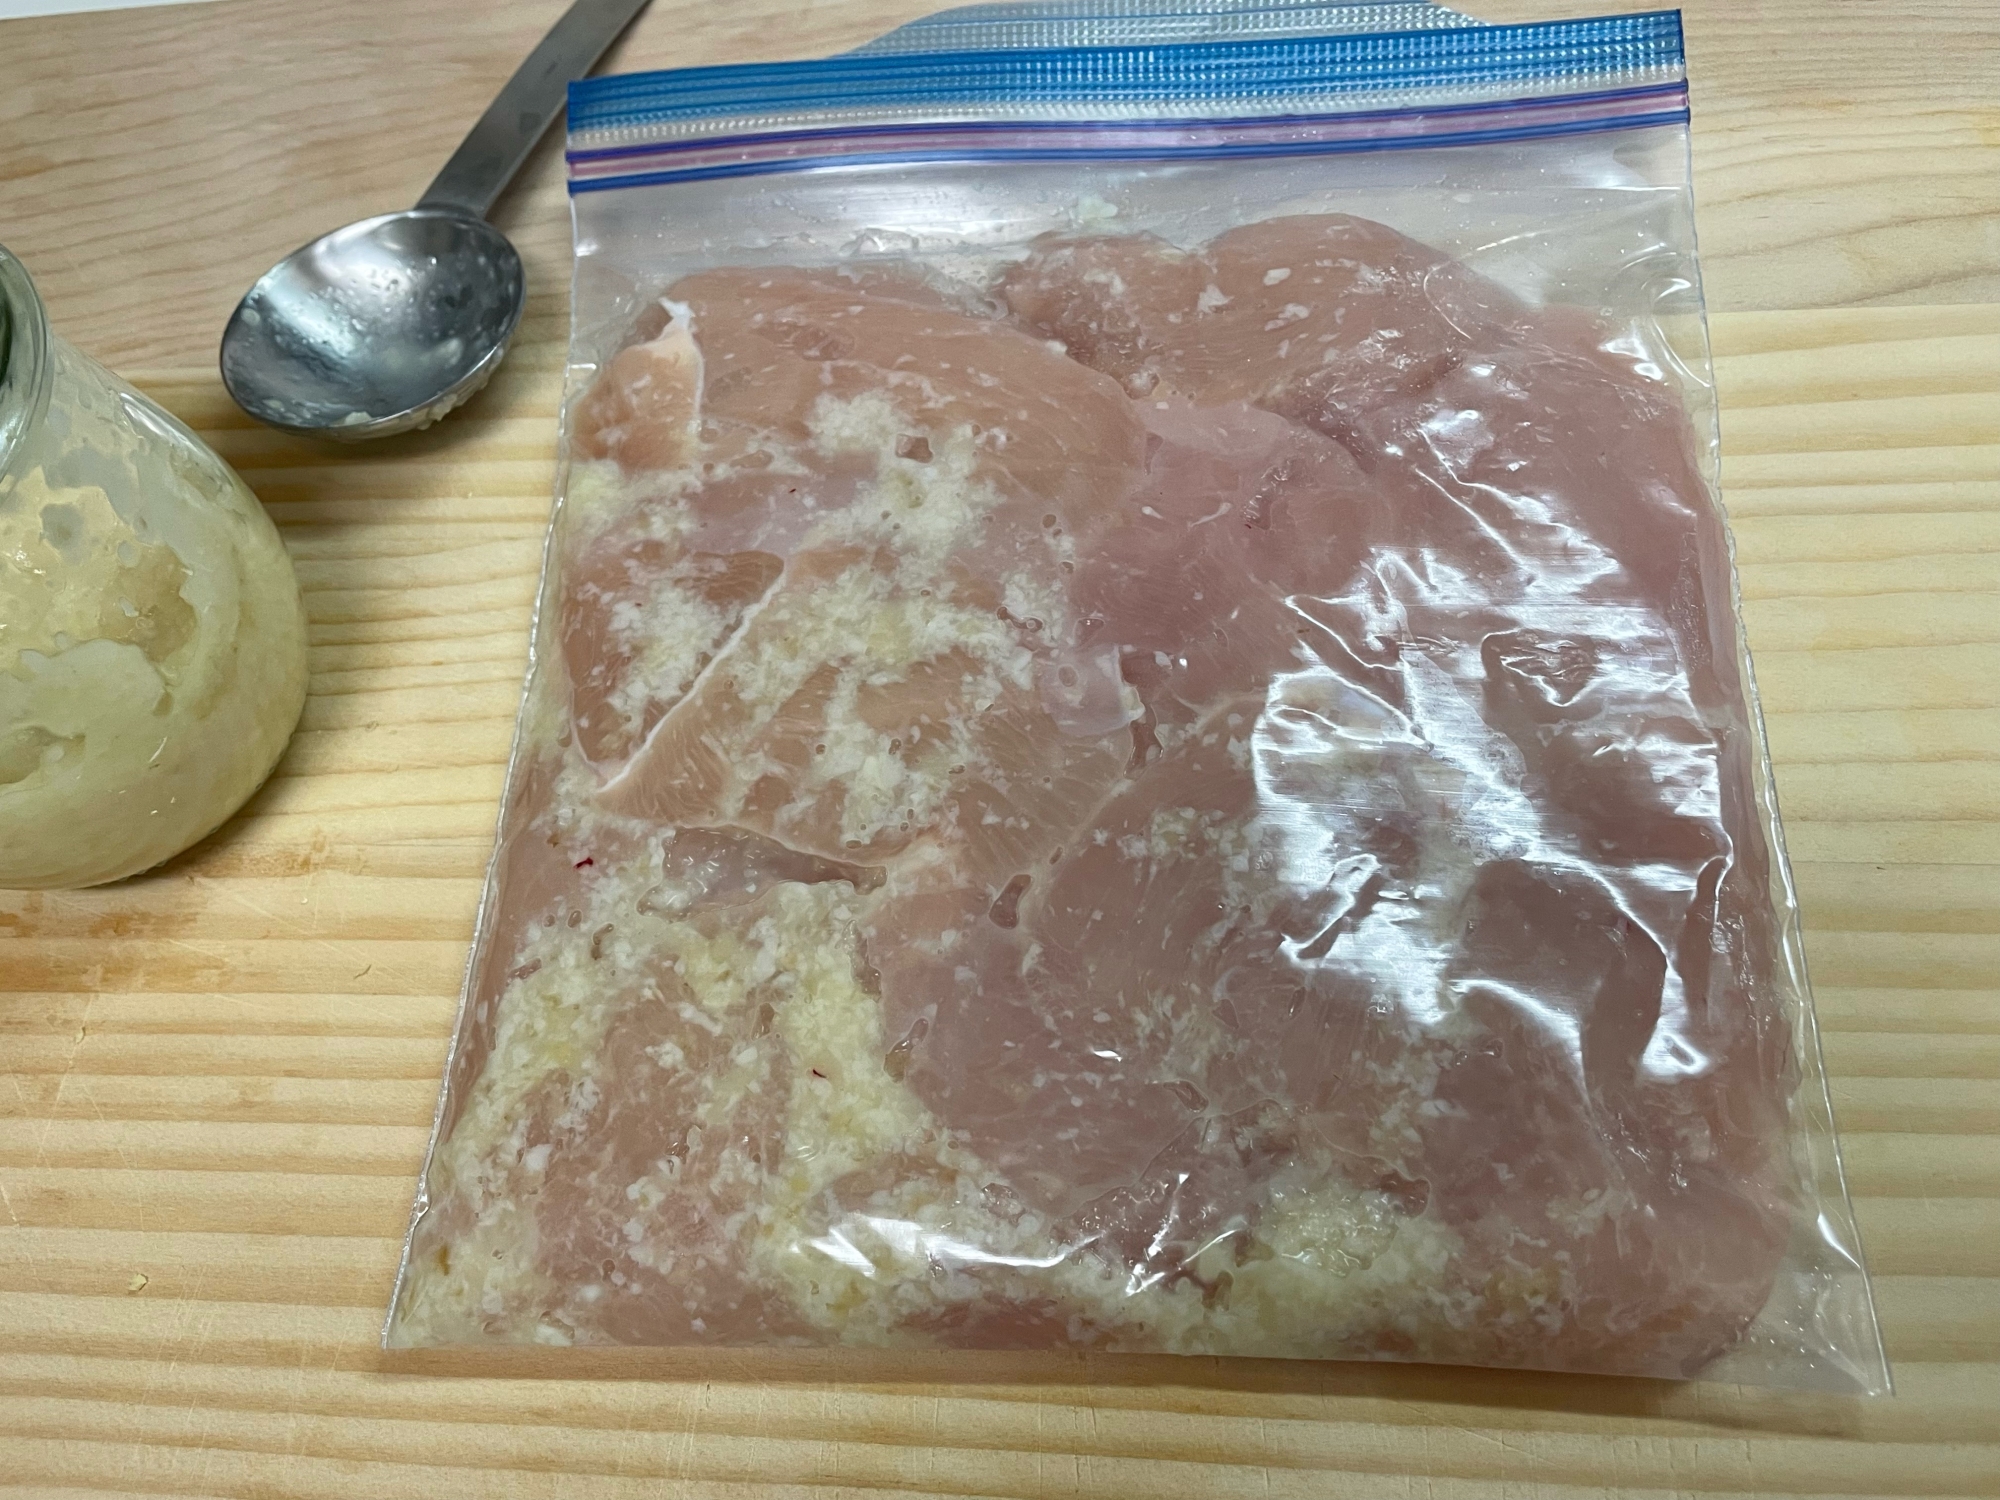 塩麹と生姜漬け鶏胸肉冷凍保存